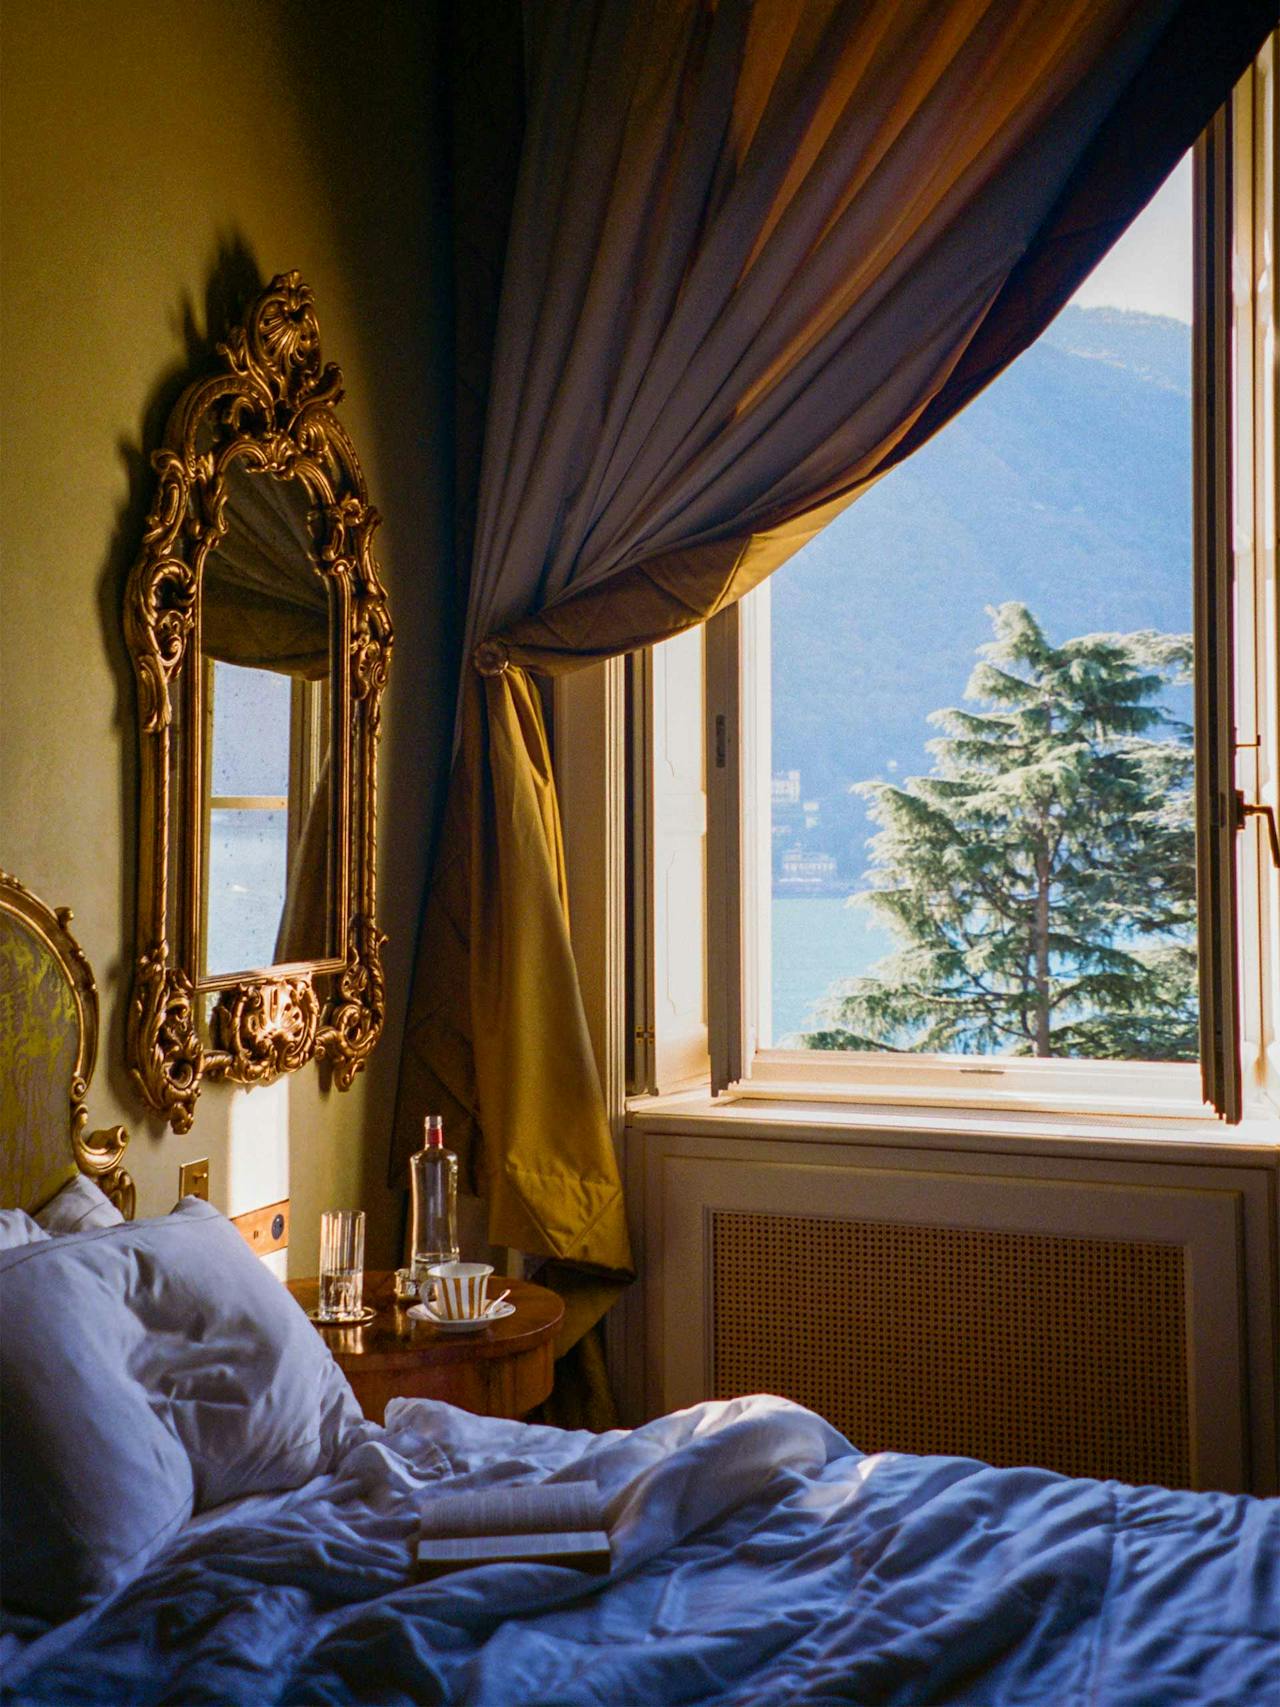 Passalacqua, Lake Como, Italy